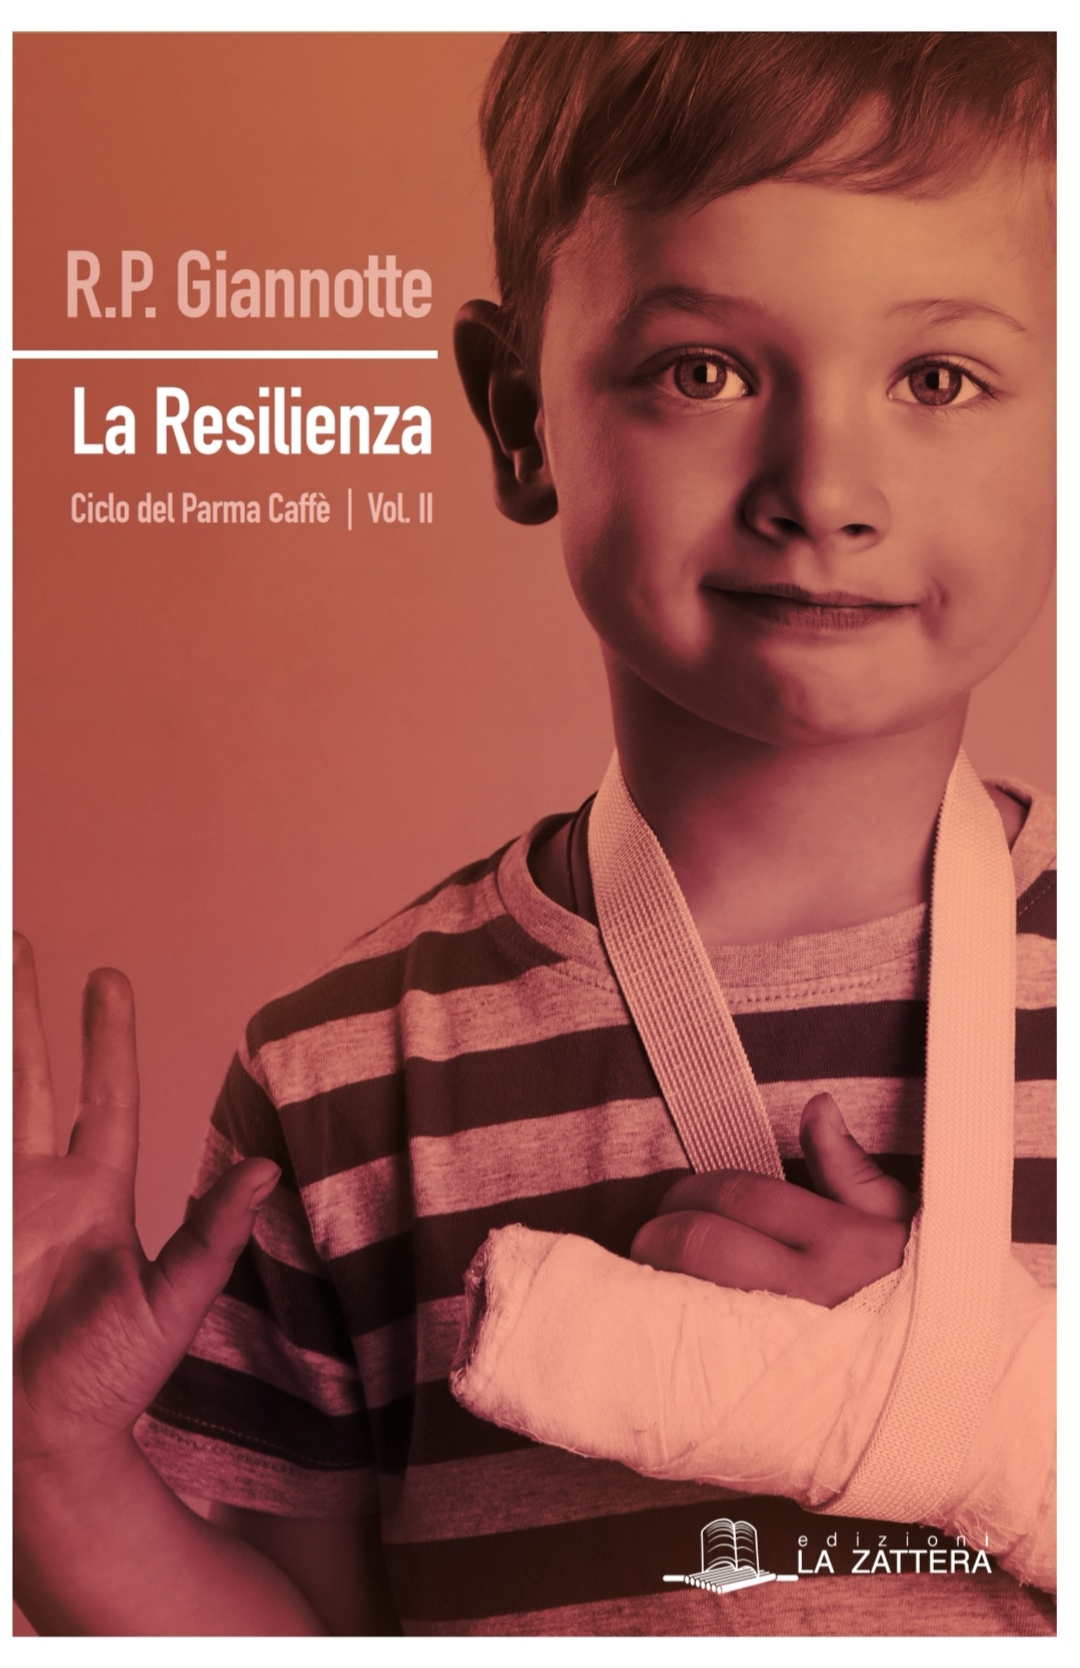 Foto 1 - R. P. Giannotte presenta il romanzo La resilienza